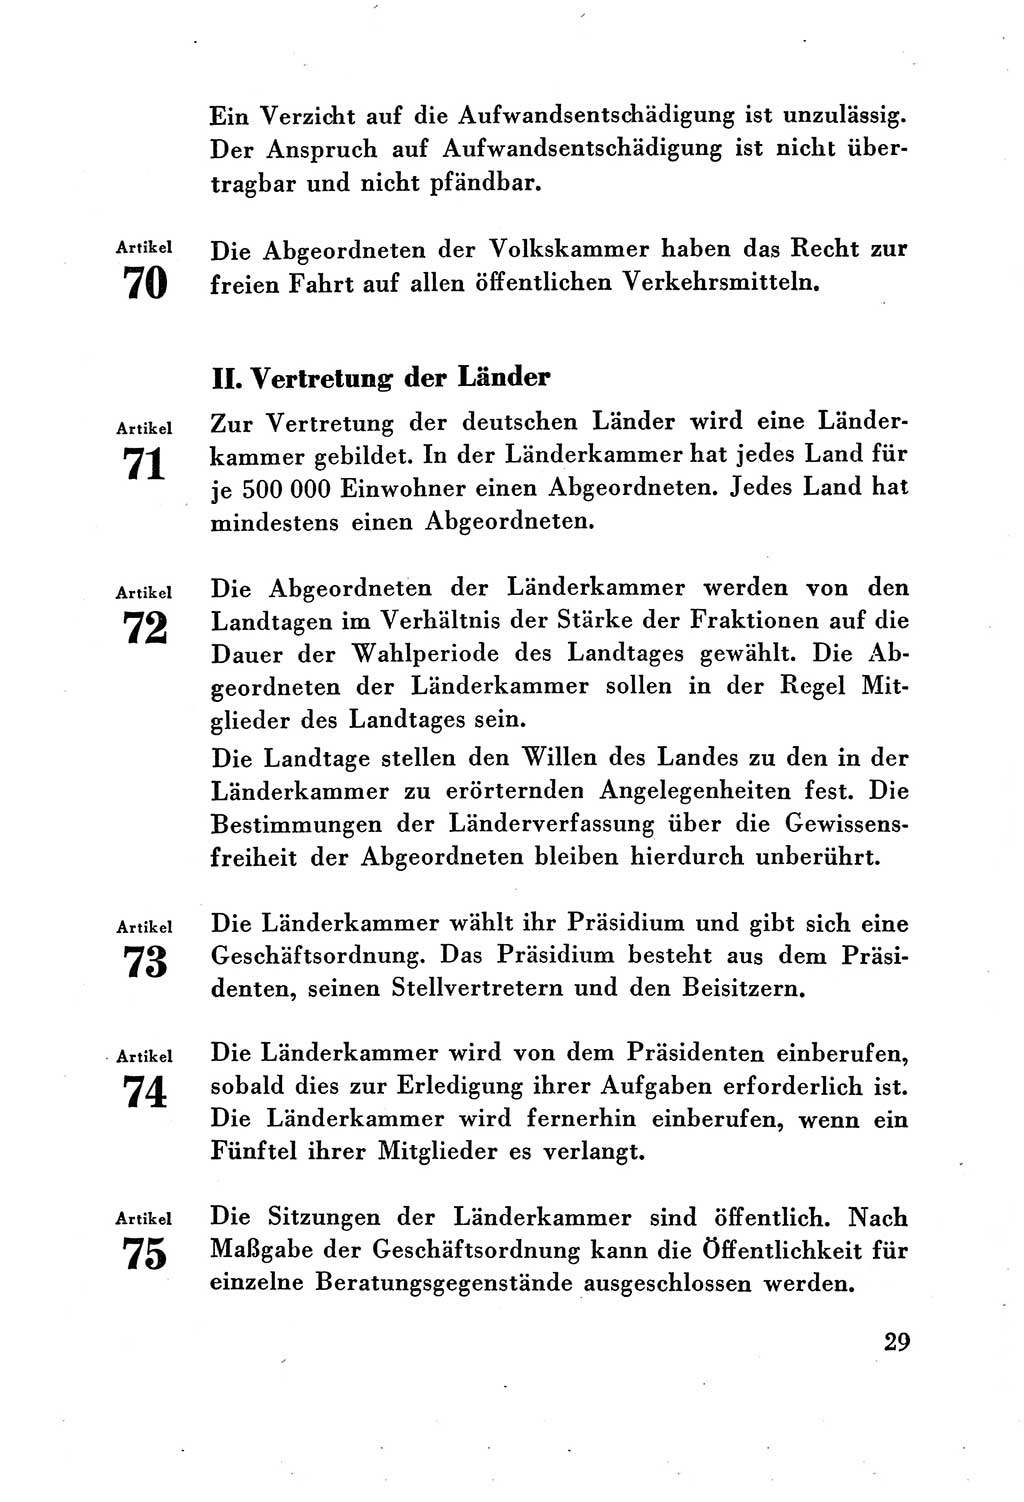 Verfassung der Deutschen Demokratischen Republik (DDR) vom 7. Oktober 1949, Seite 29 (Verf. DDR 1949, S. 29)